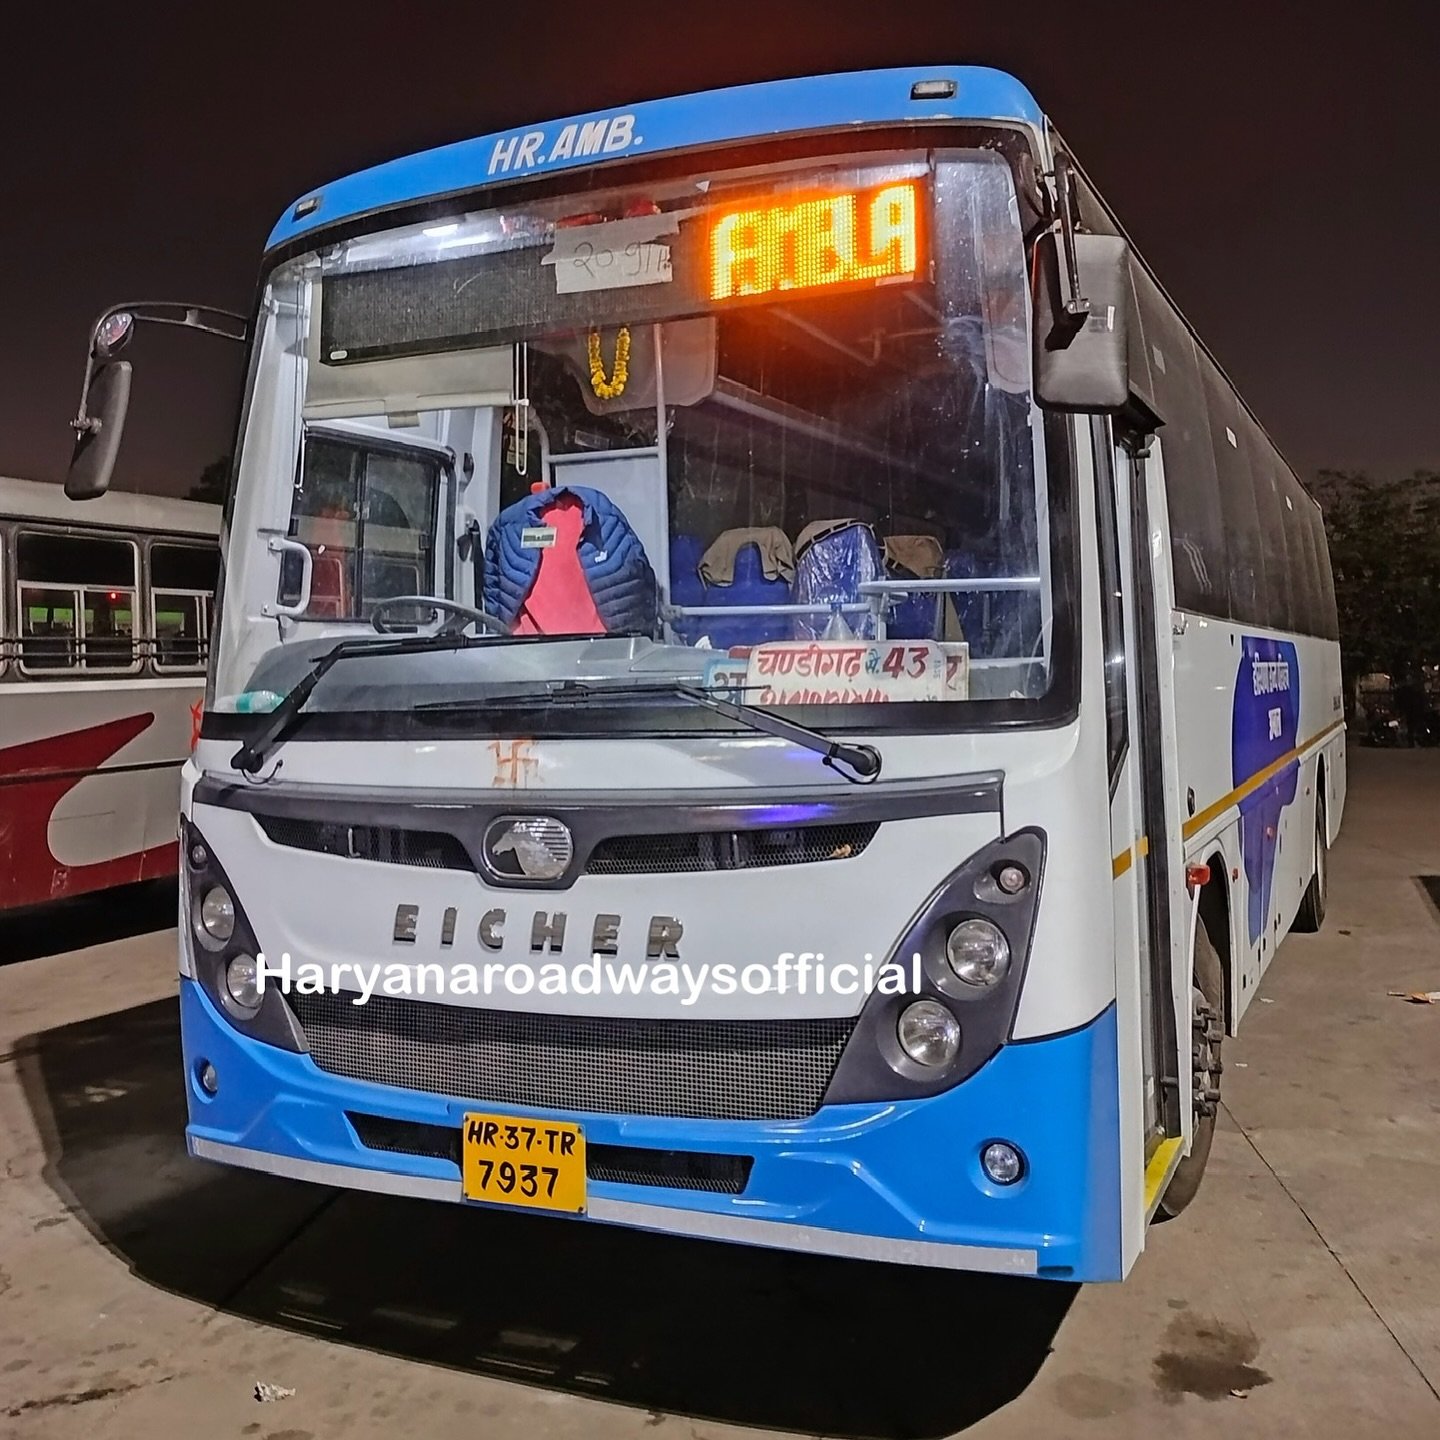 Haryana Roadways Time Table: हरियाणा रोडवेज की बसों का टाइम टेबल, जानिए AC बसों का रूट और टाइम